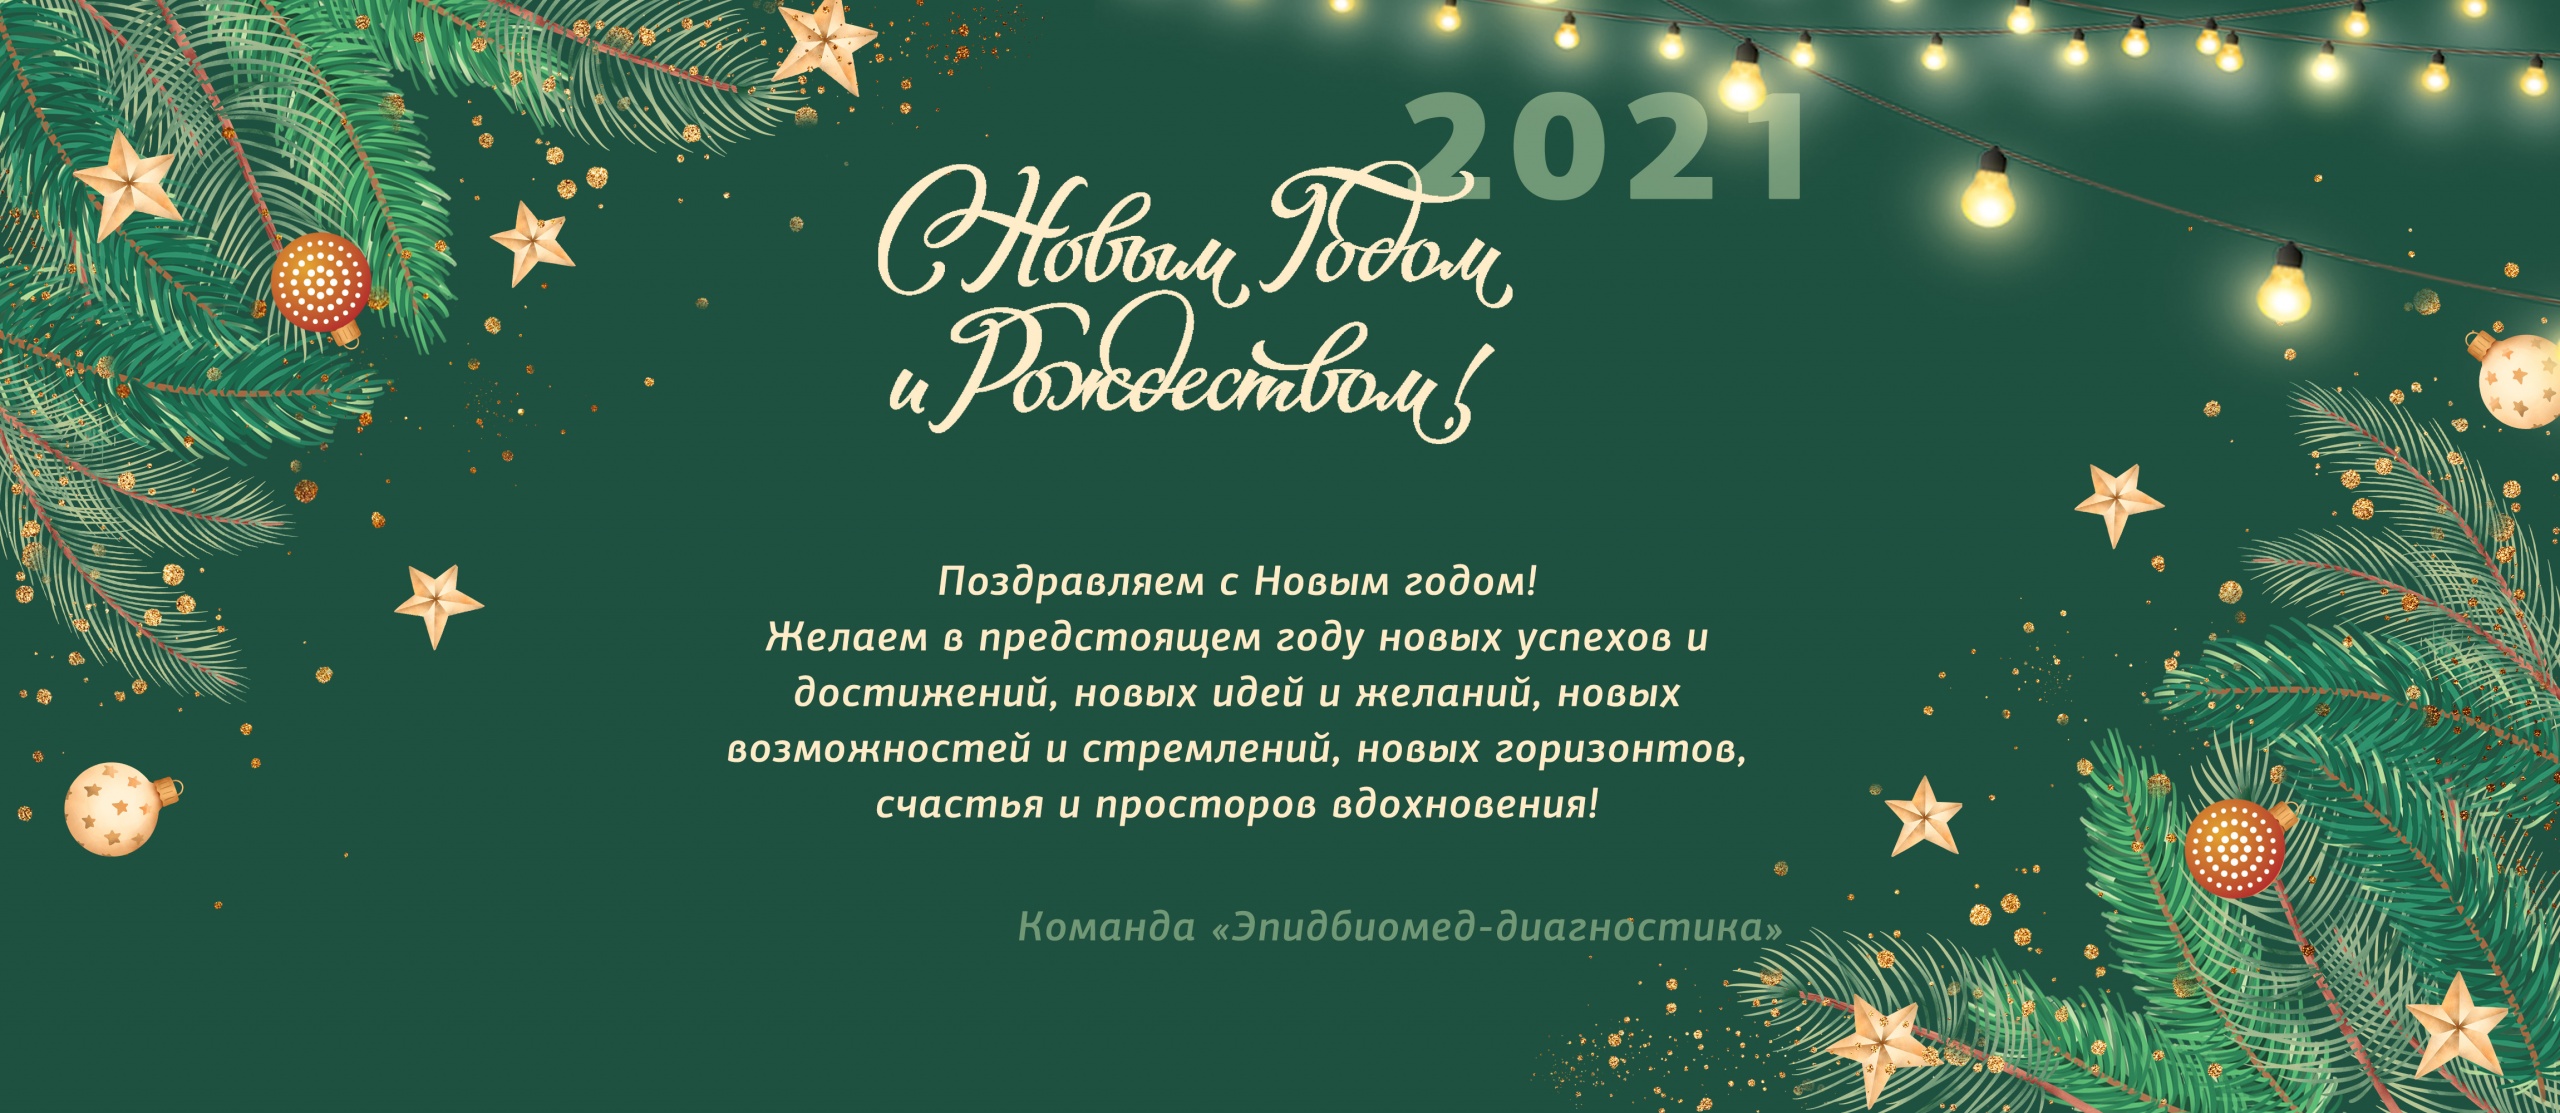 С Новым годом_2021.jpg